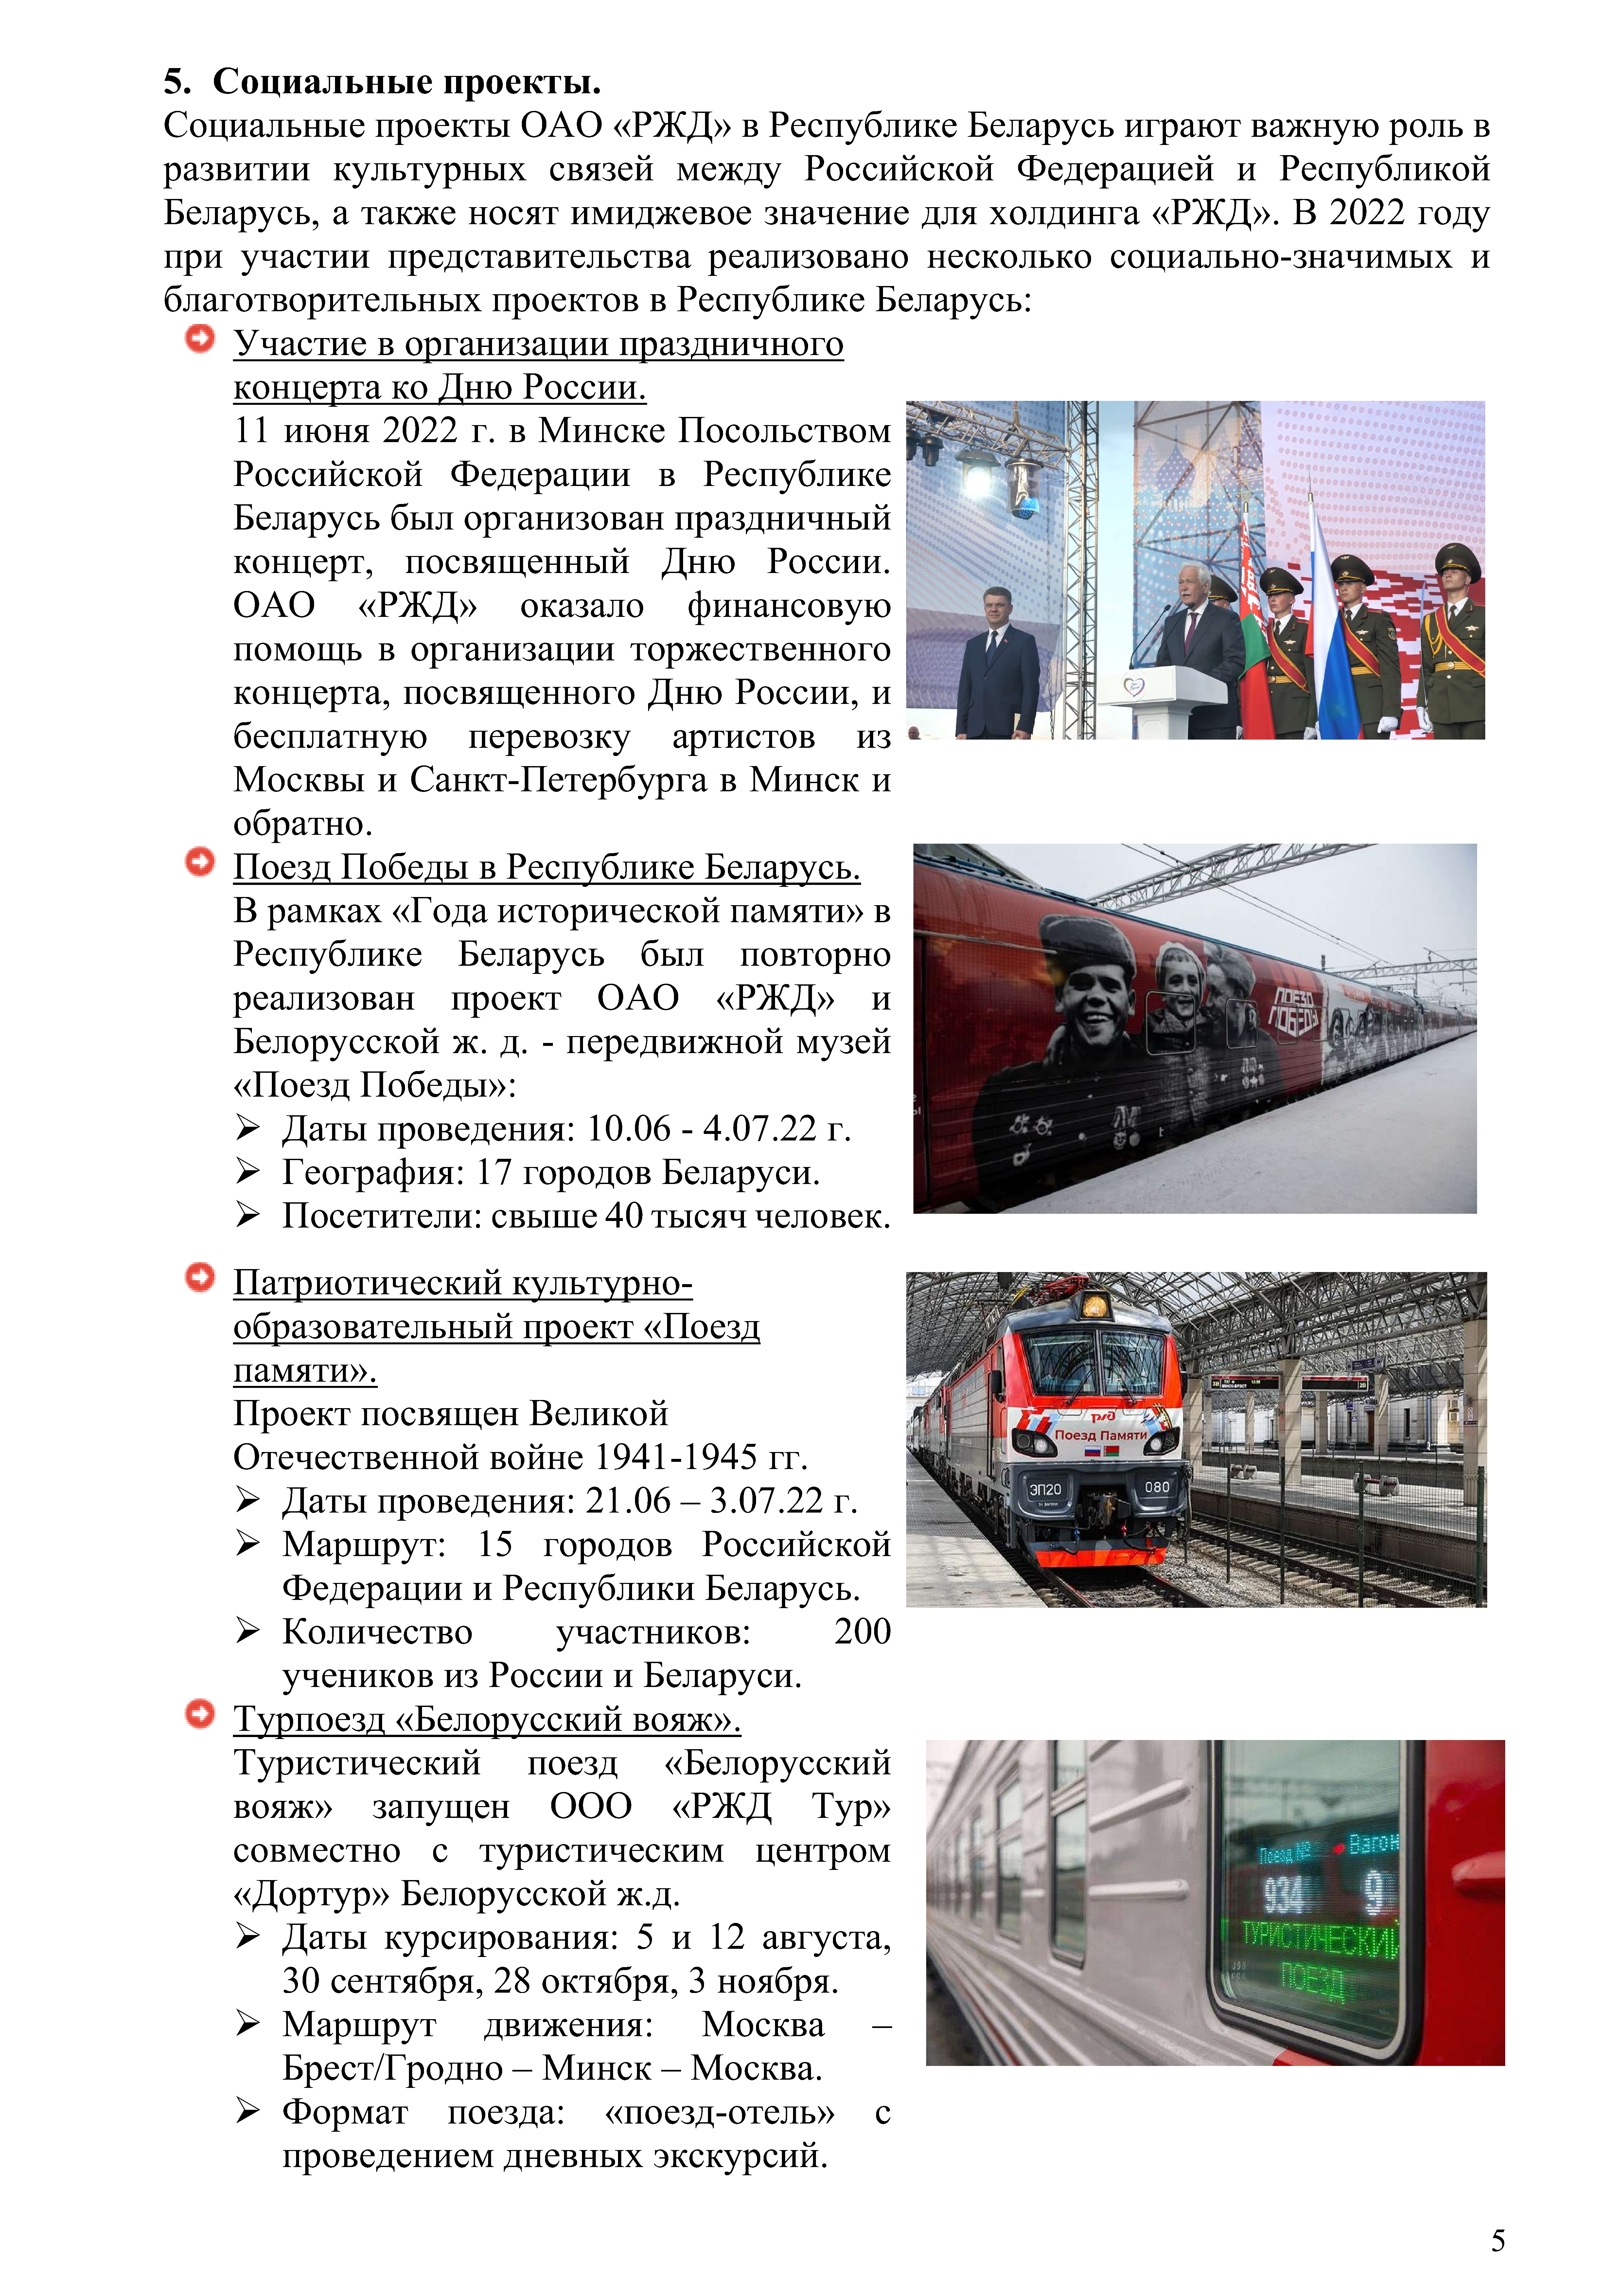 Отчет о работе представительства ОАО «РЖД» в Республике Беларусь за 2022 год (Страница 4)